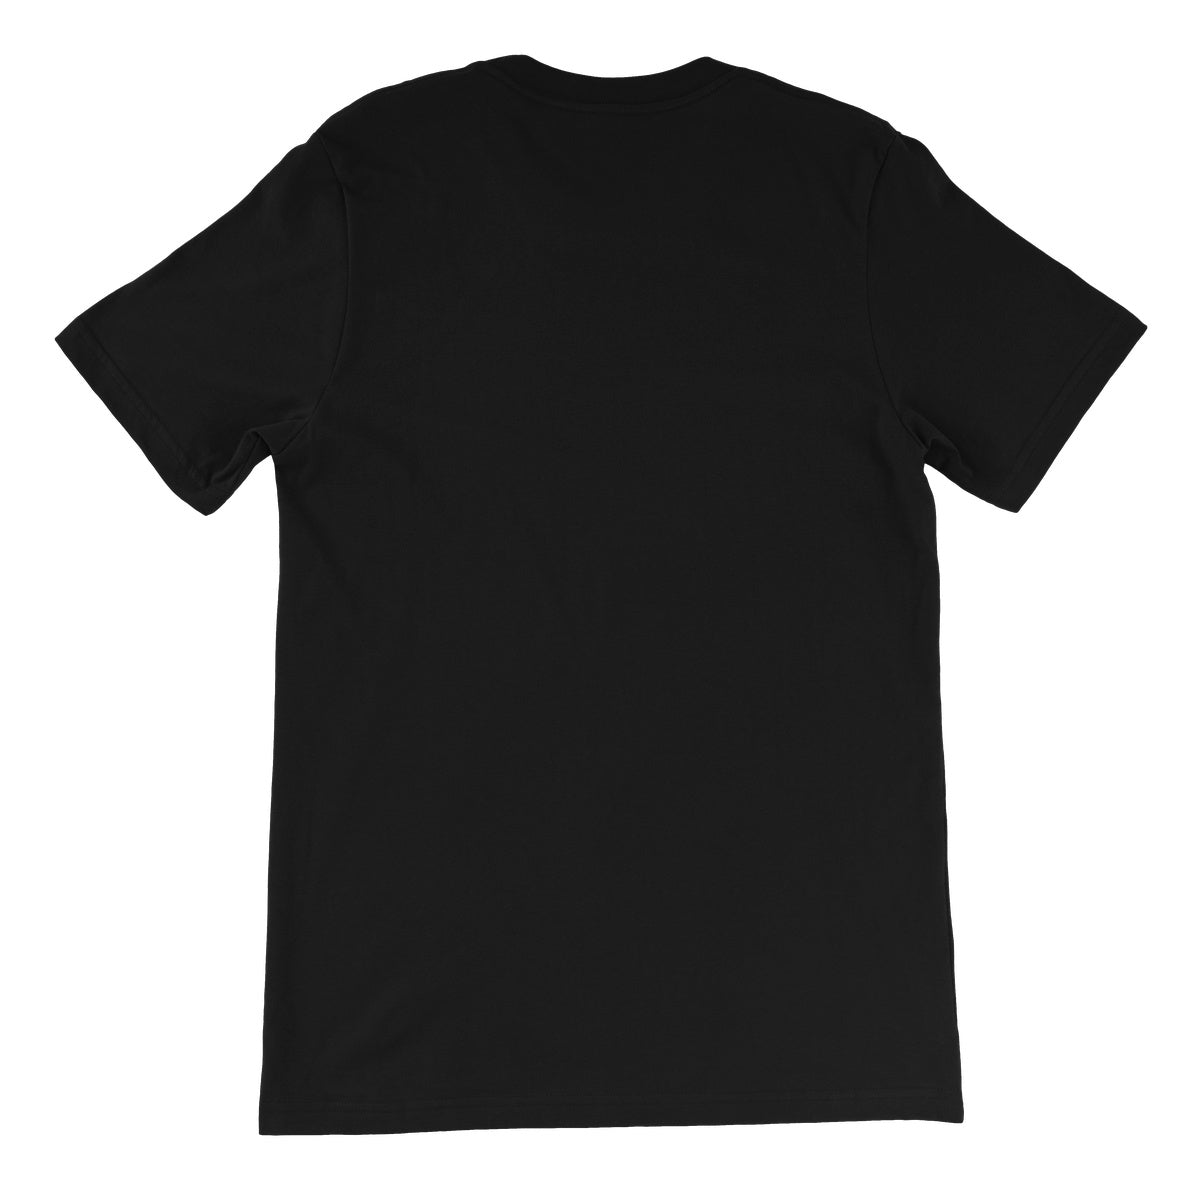 Bound For Glory 2020 - MCMG Unisex Short Sleeve T-Shirt